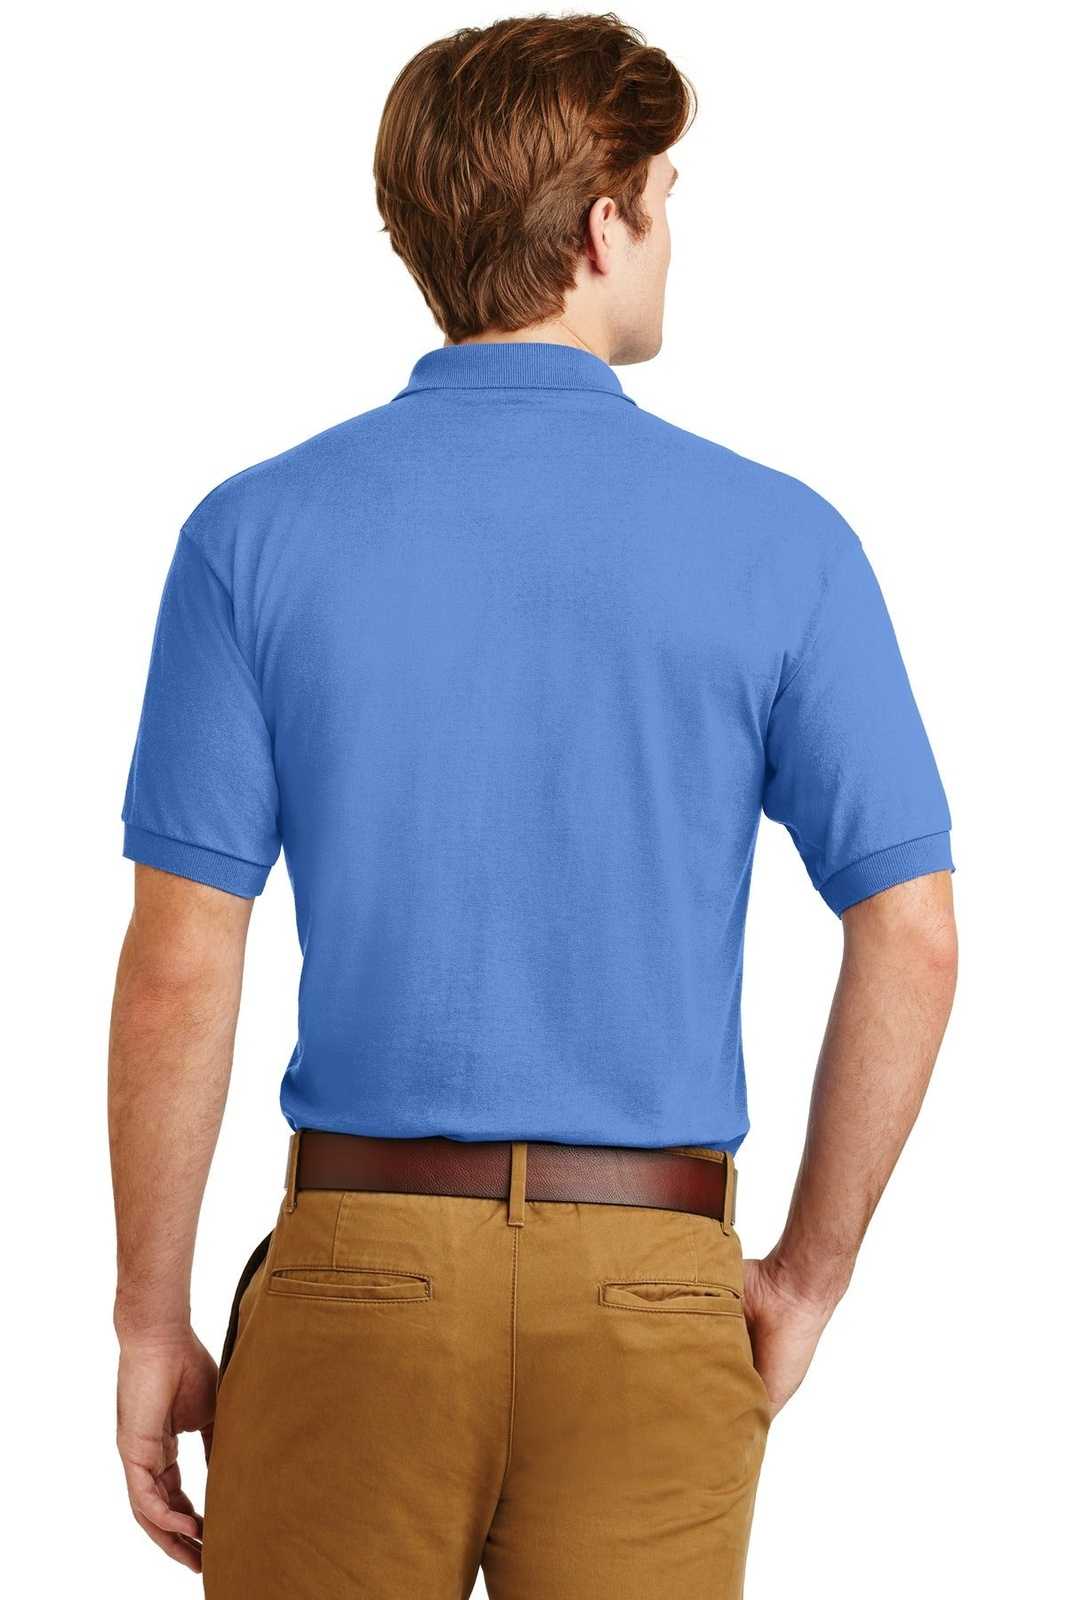 Gildan 8800 Dryblend 6-Ounce Jersey Knit Sport Shirt - Carolina Blue - HIT a Double